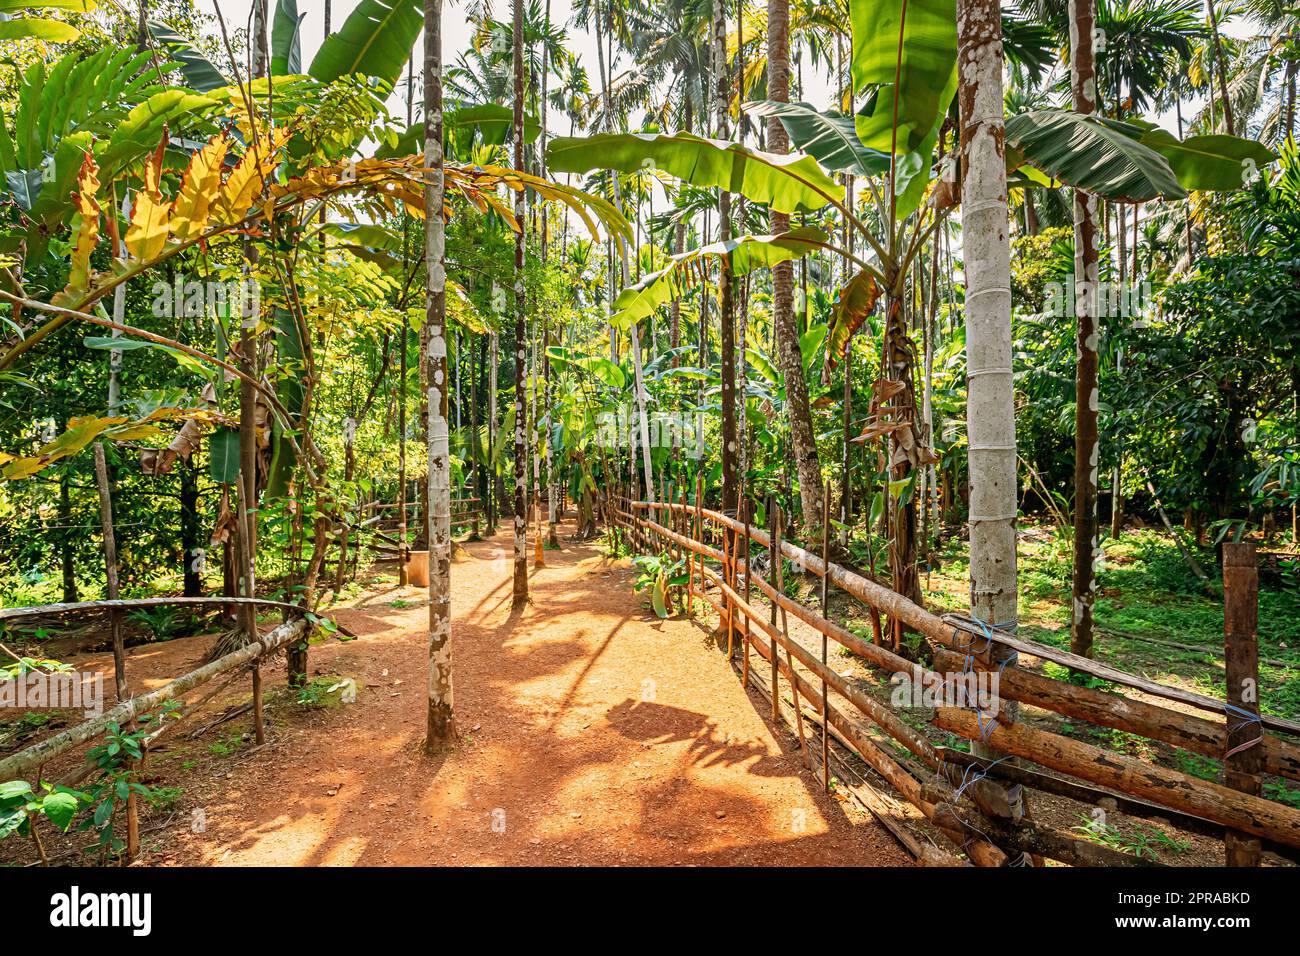 Goa, Inde. Vue sur Road Lane Path Way entourée de végétation tropicale verte et de bambous en une journée ensoleillée. Paysage du parc Banque D'Images